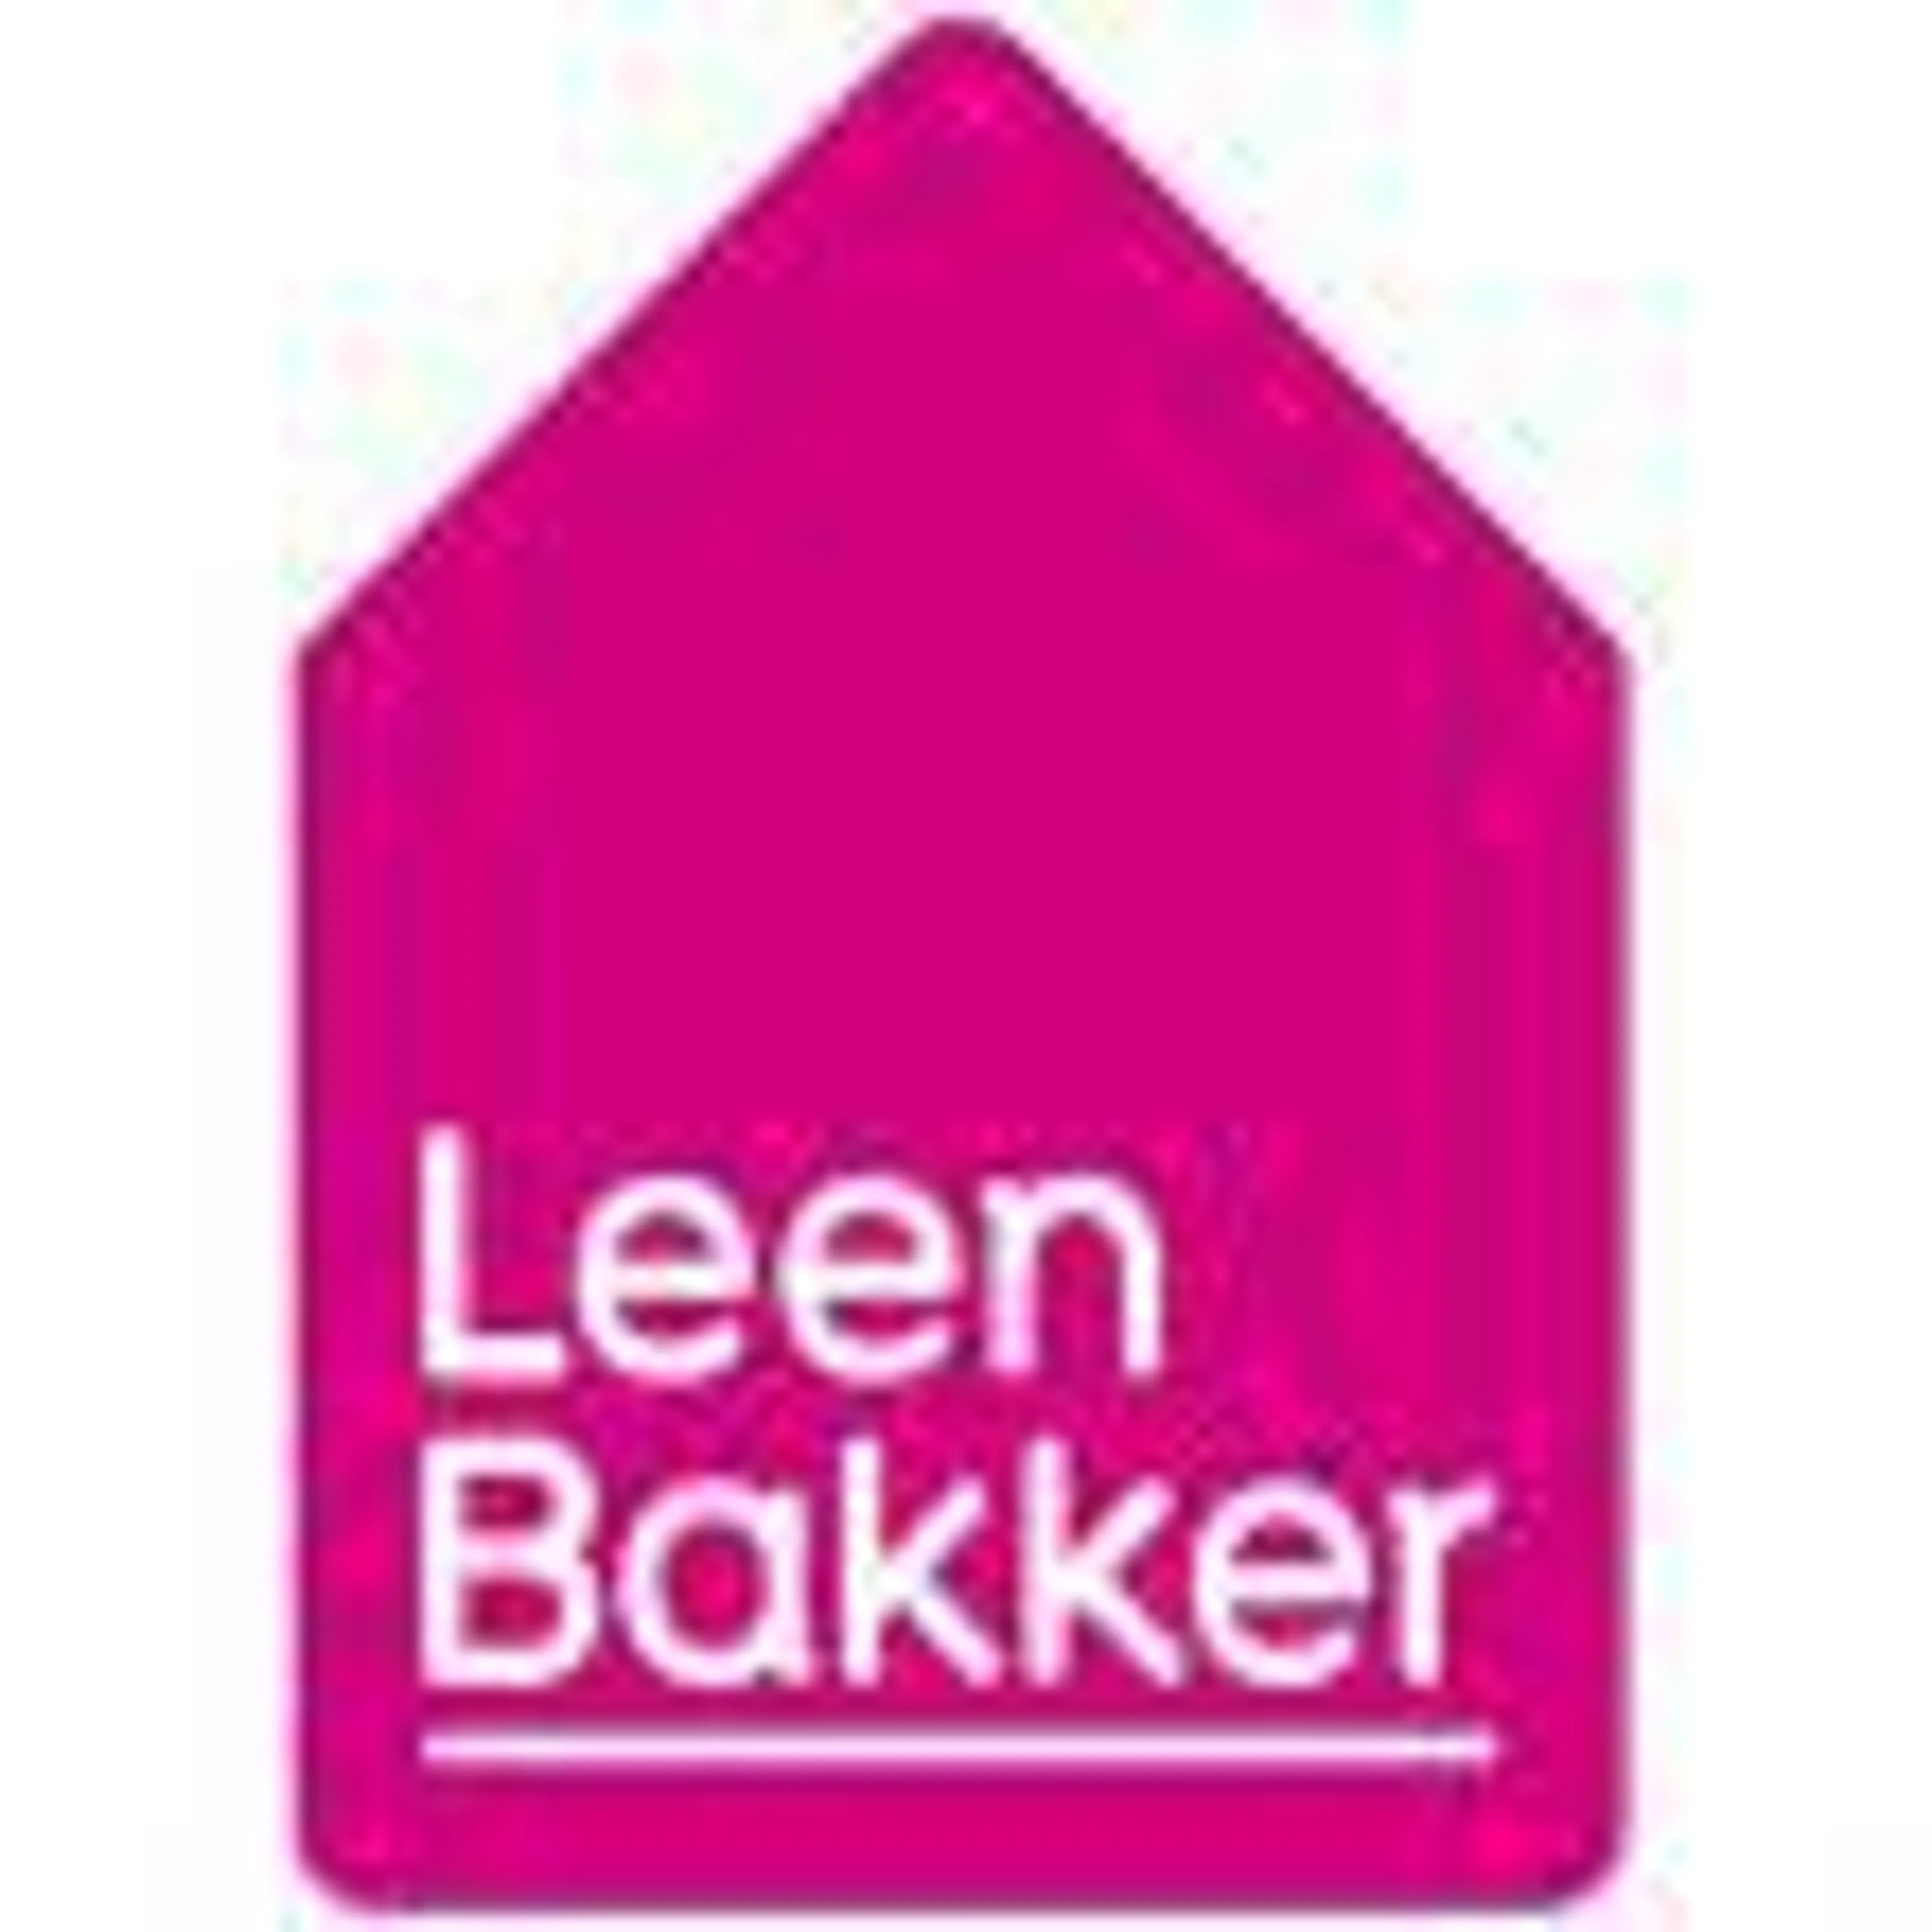 LEEN BAKKER logo